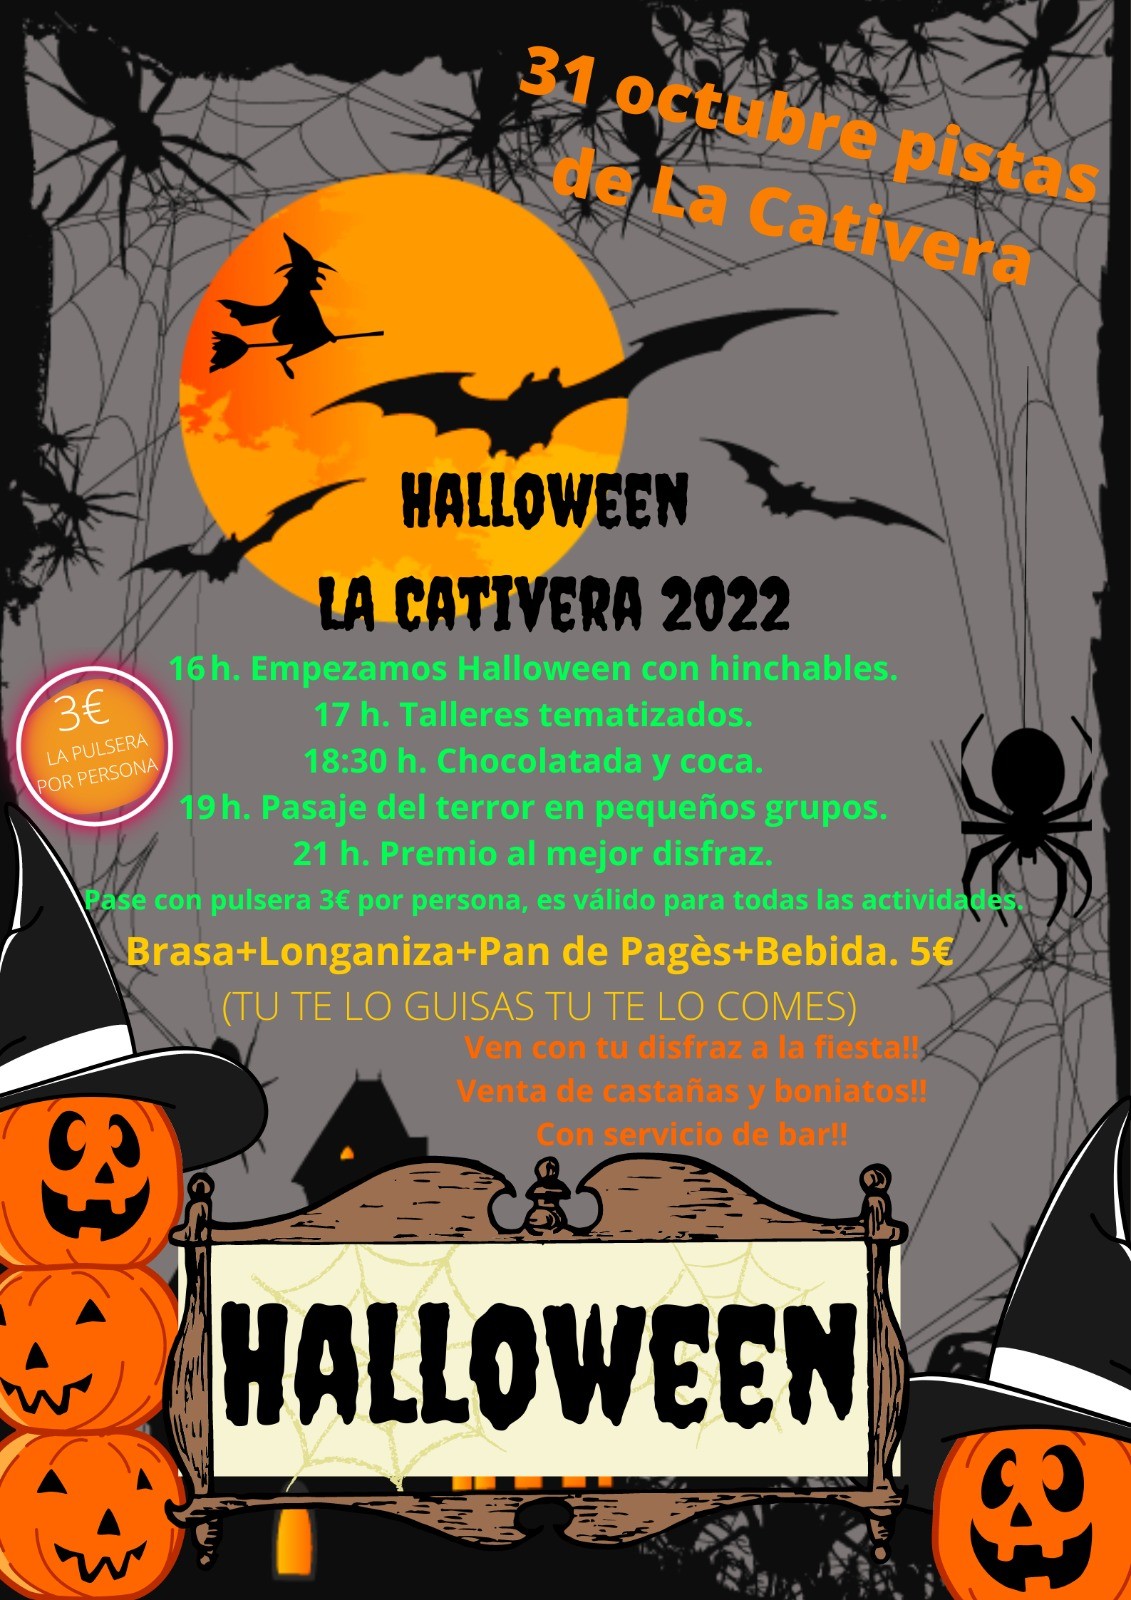 LA CATIVERA. 31 D'OCTUBRE 2022